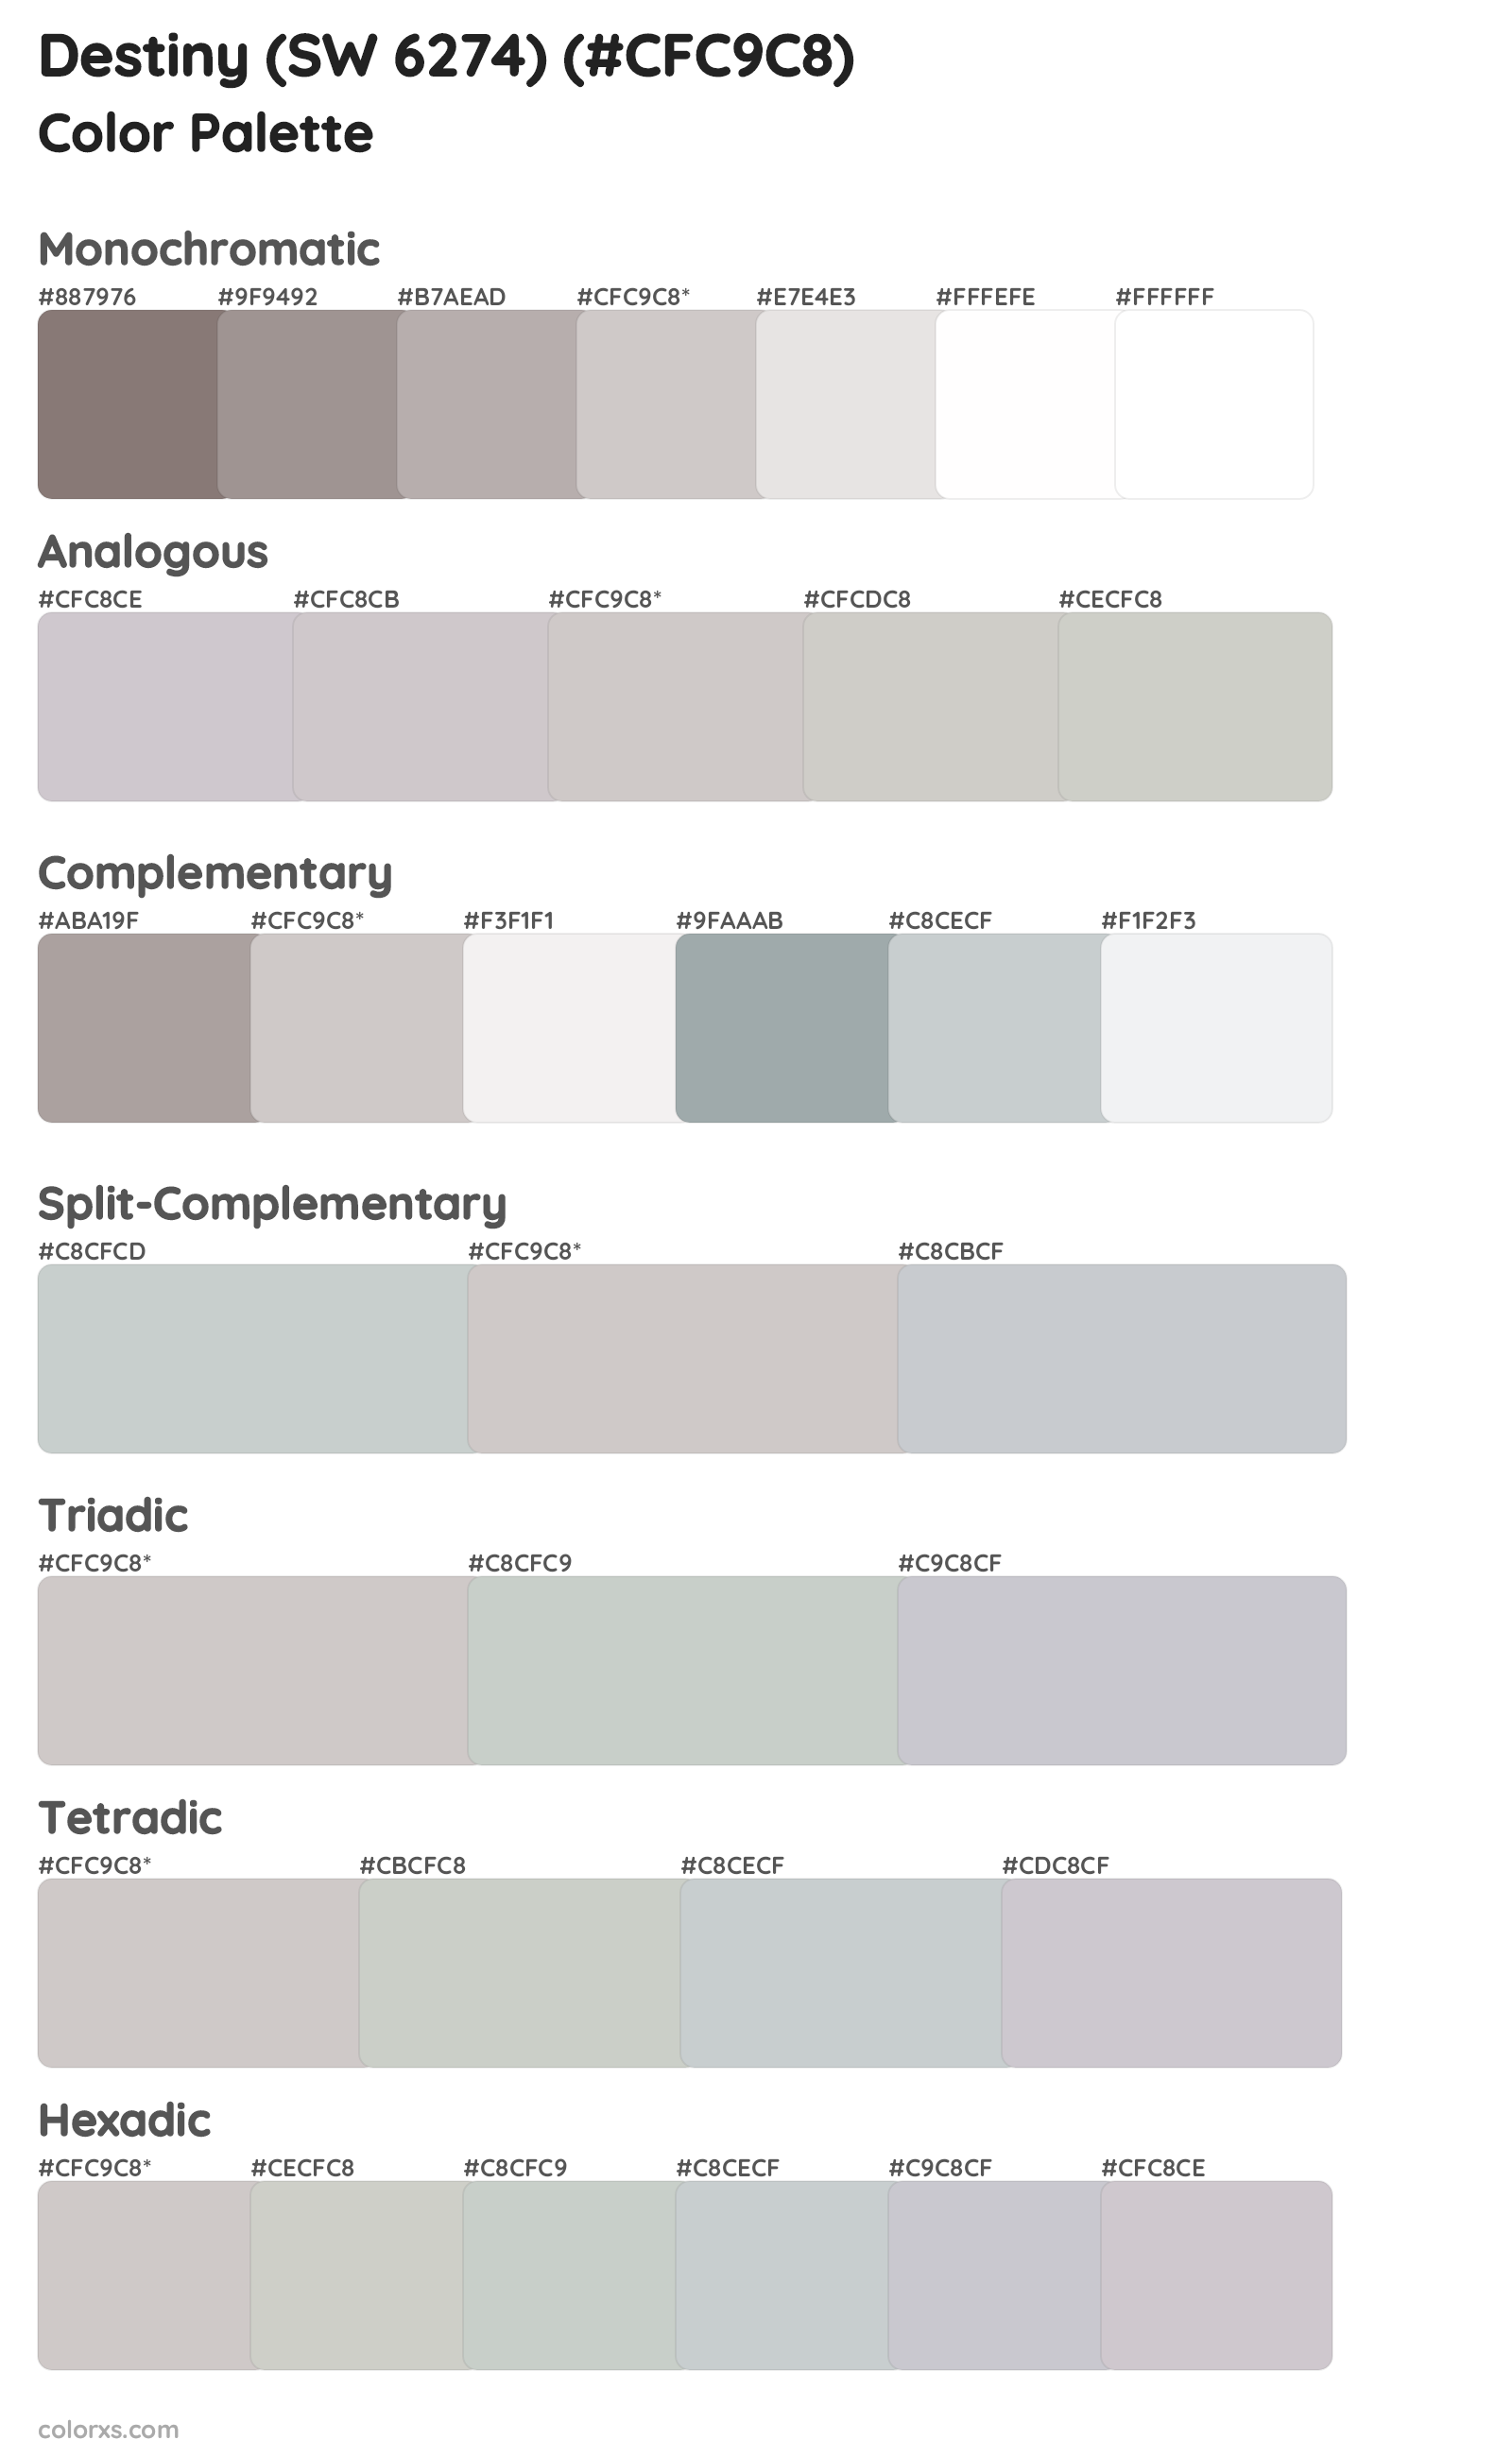 Destiny (SW 6274) Color Scheme Palettes